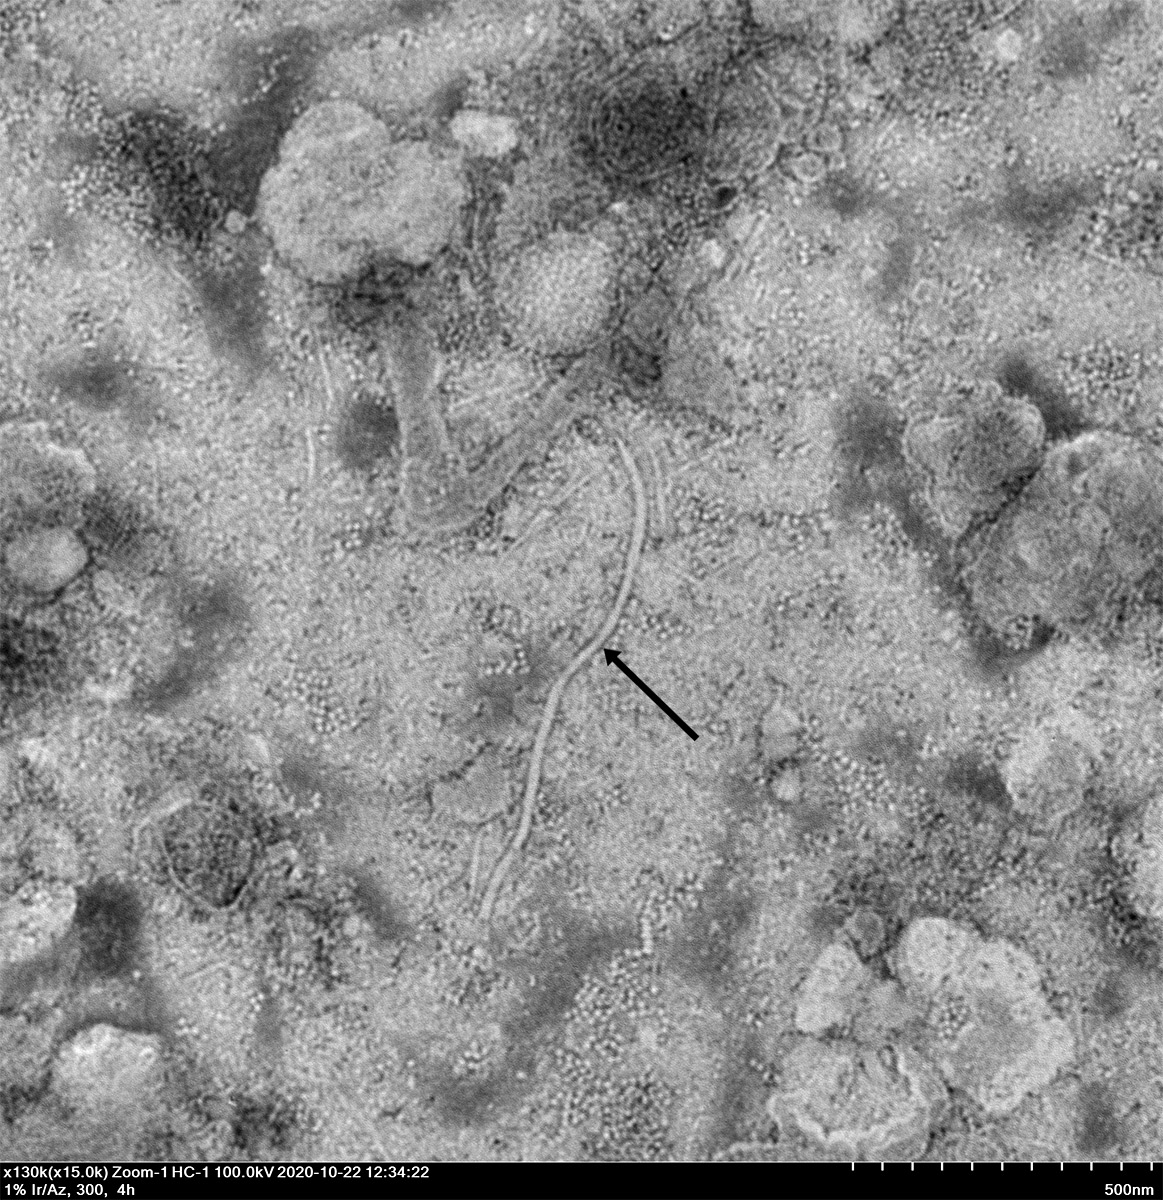 Wirus obecny w liściu monstery adansonii. Widok z mikroskopu elektronowego dzięki uprzejmości Instytutu Ochrony Roślin - PIB w Poznaniu. Zdjęcie wykonała dr Julia Minicka